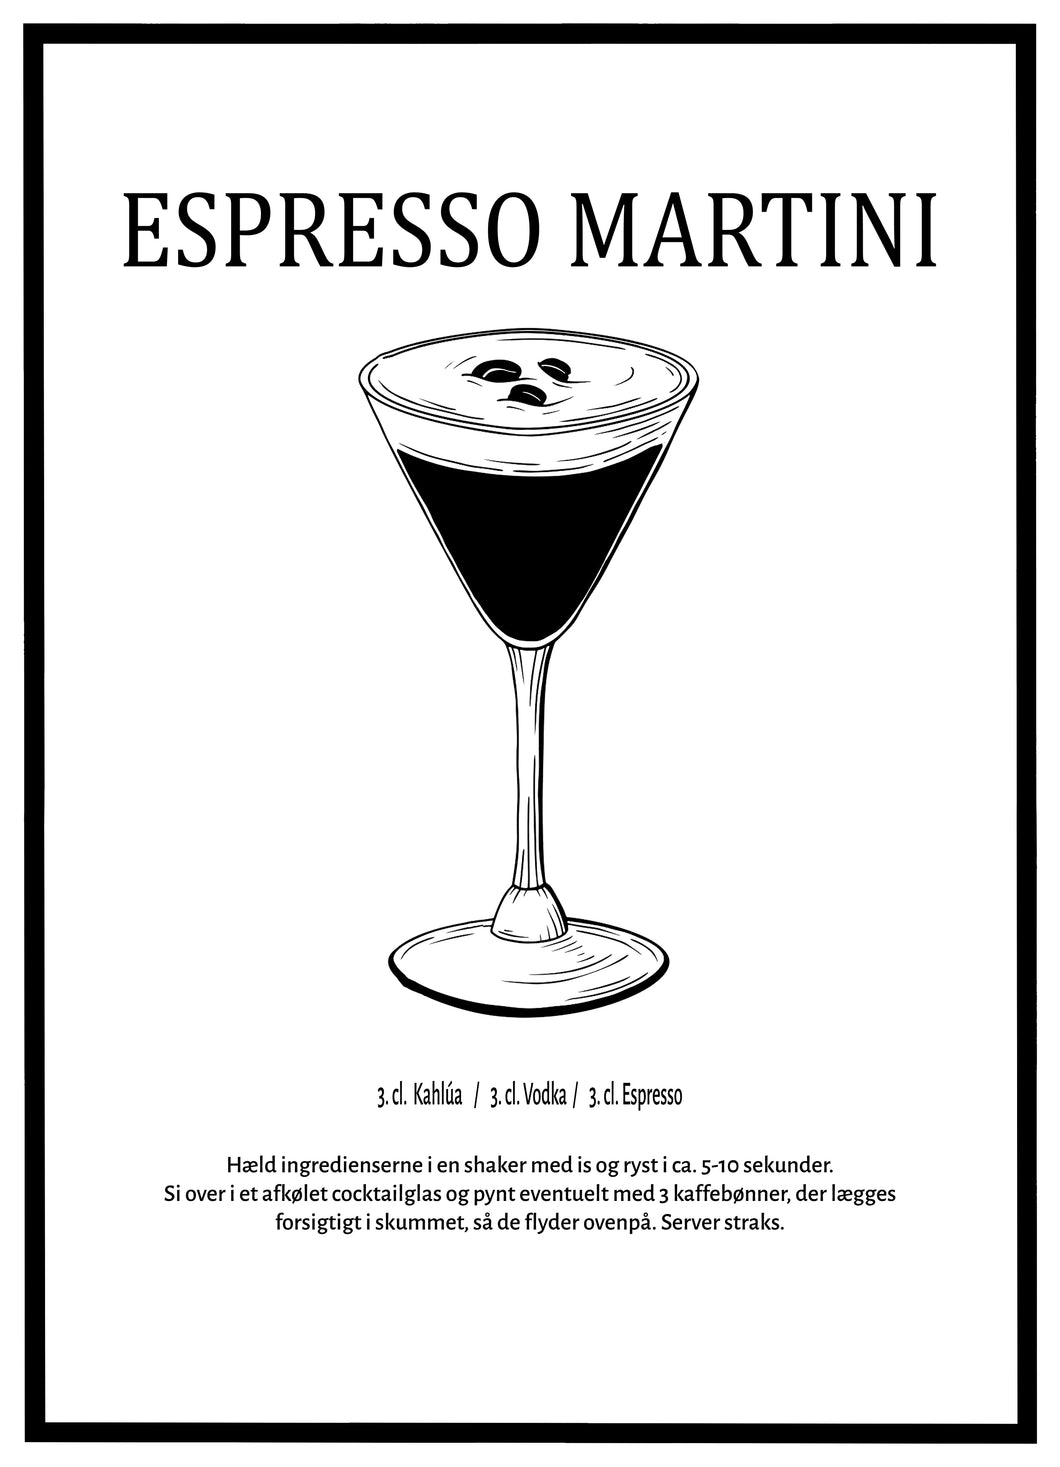 Espresso Martini - Plakat